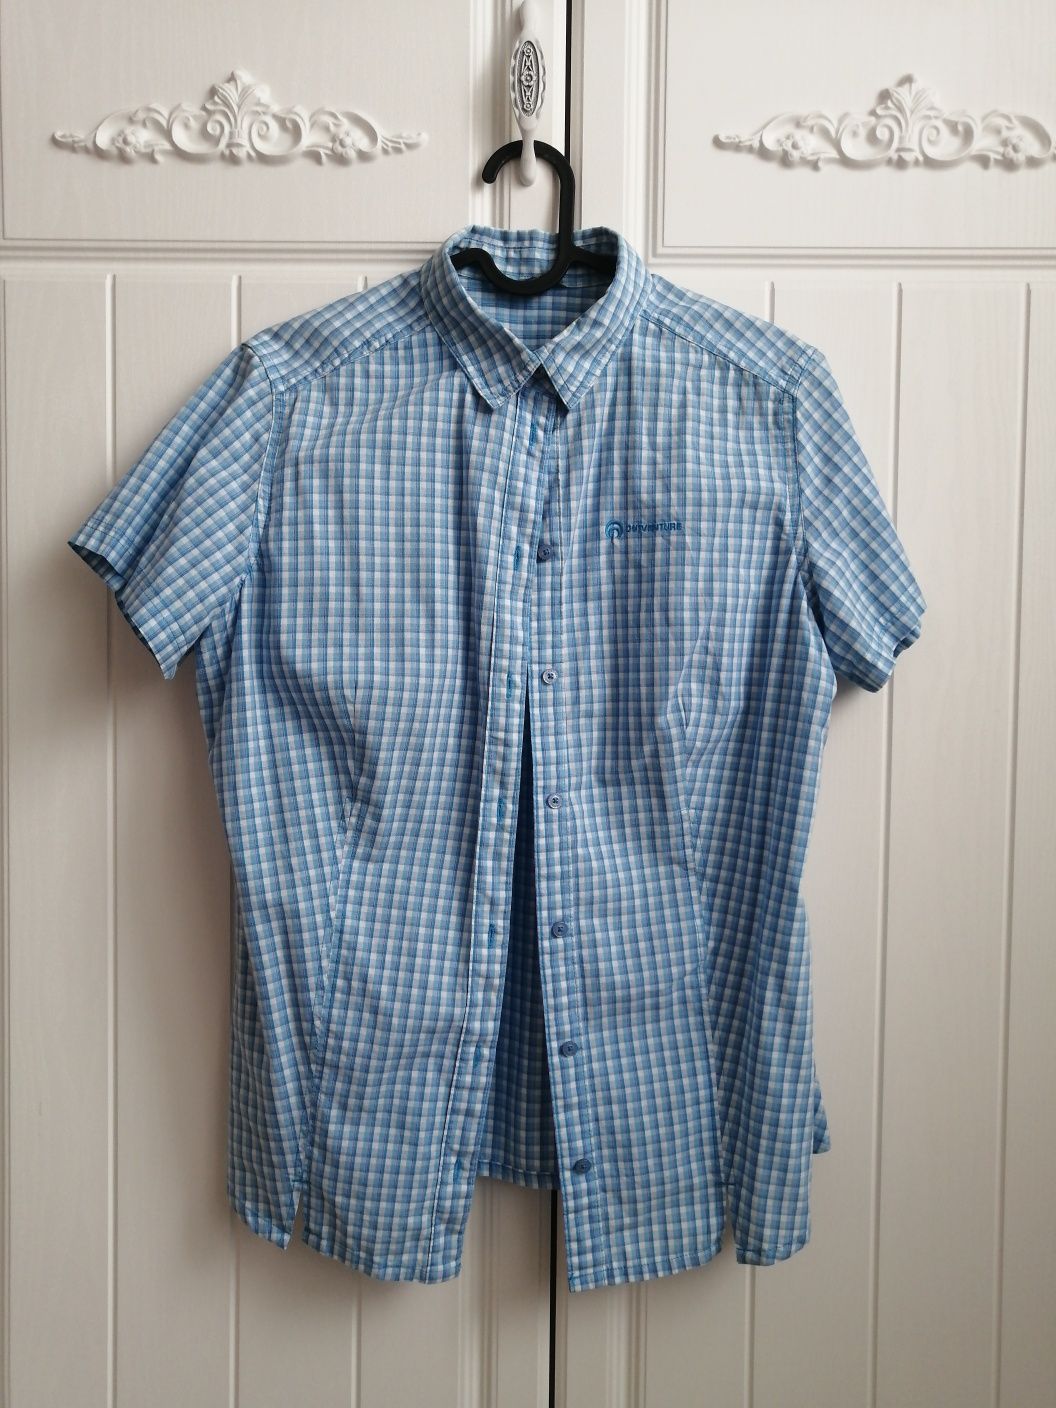 Жанская рубашка от спортмастер, размер 46,48